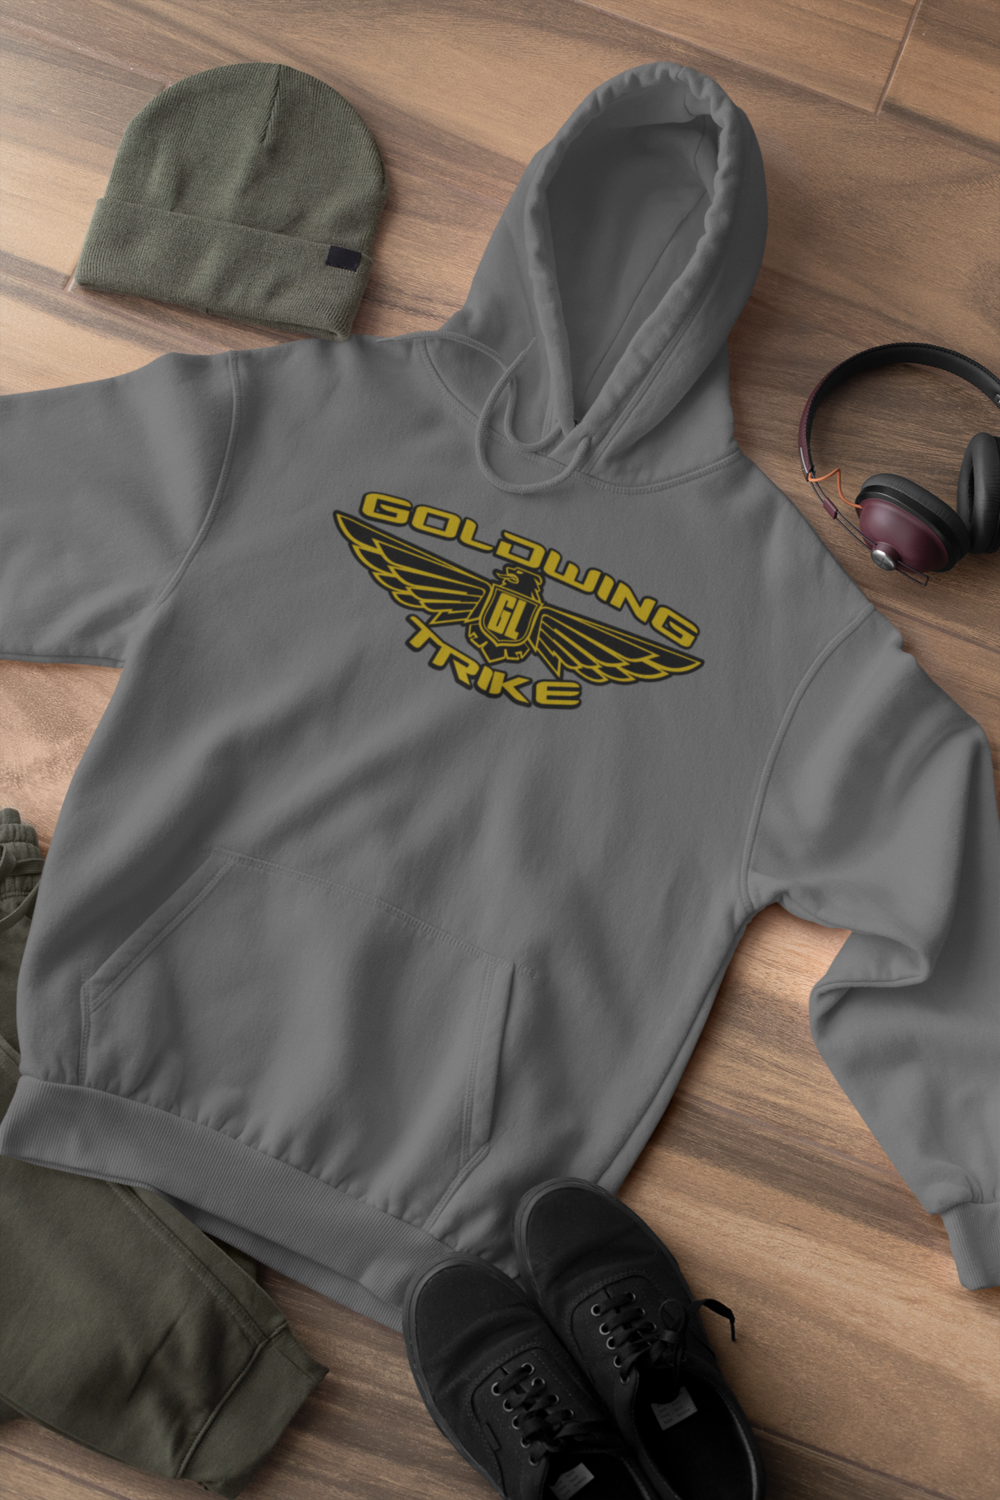 Goldwing trike hoodie